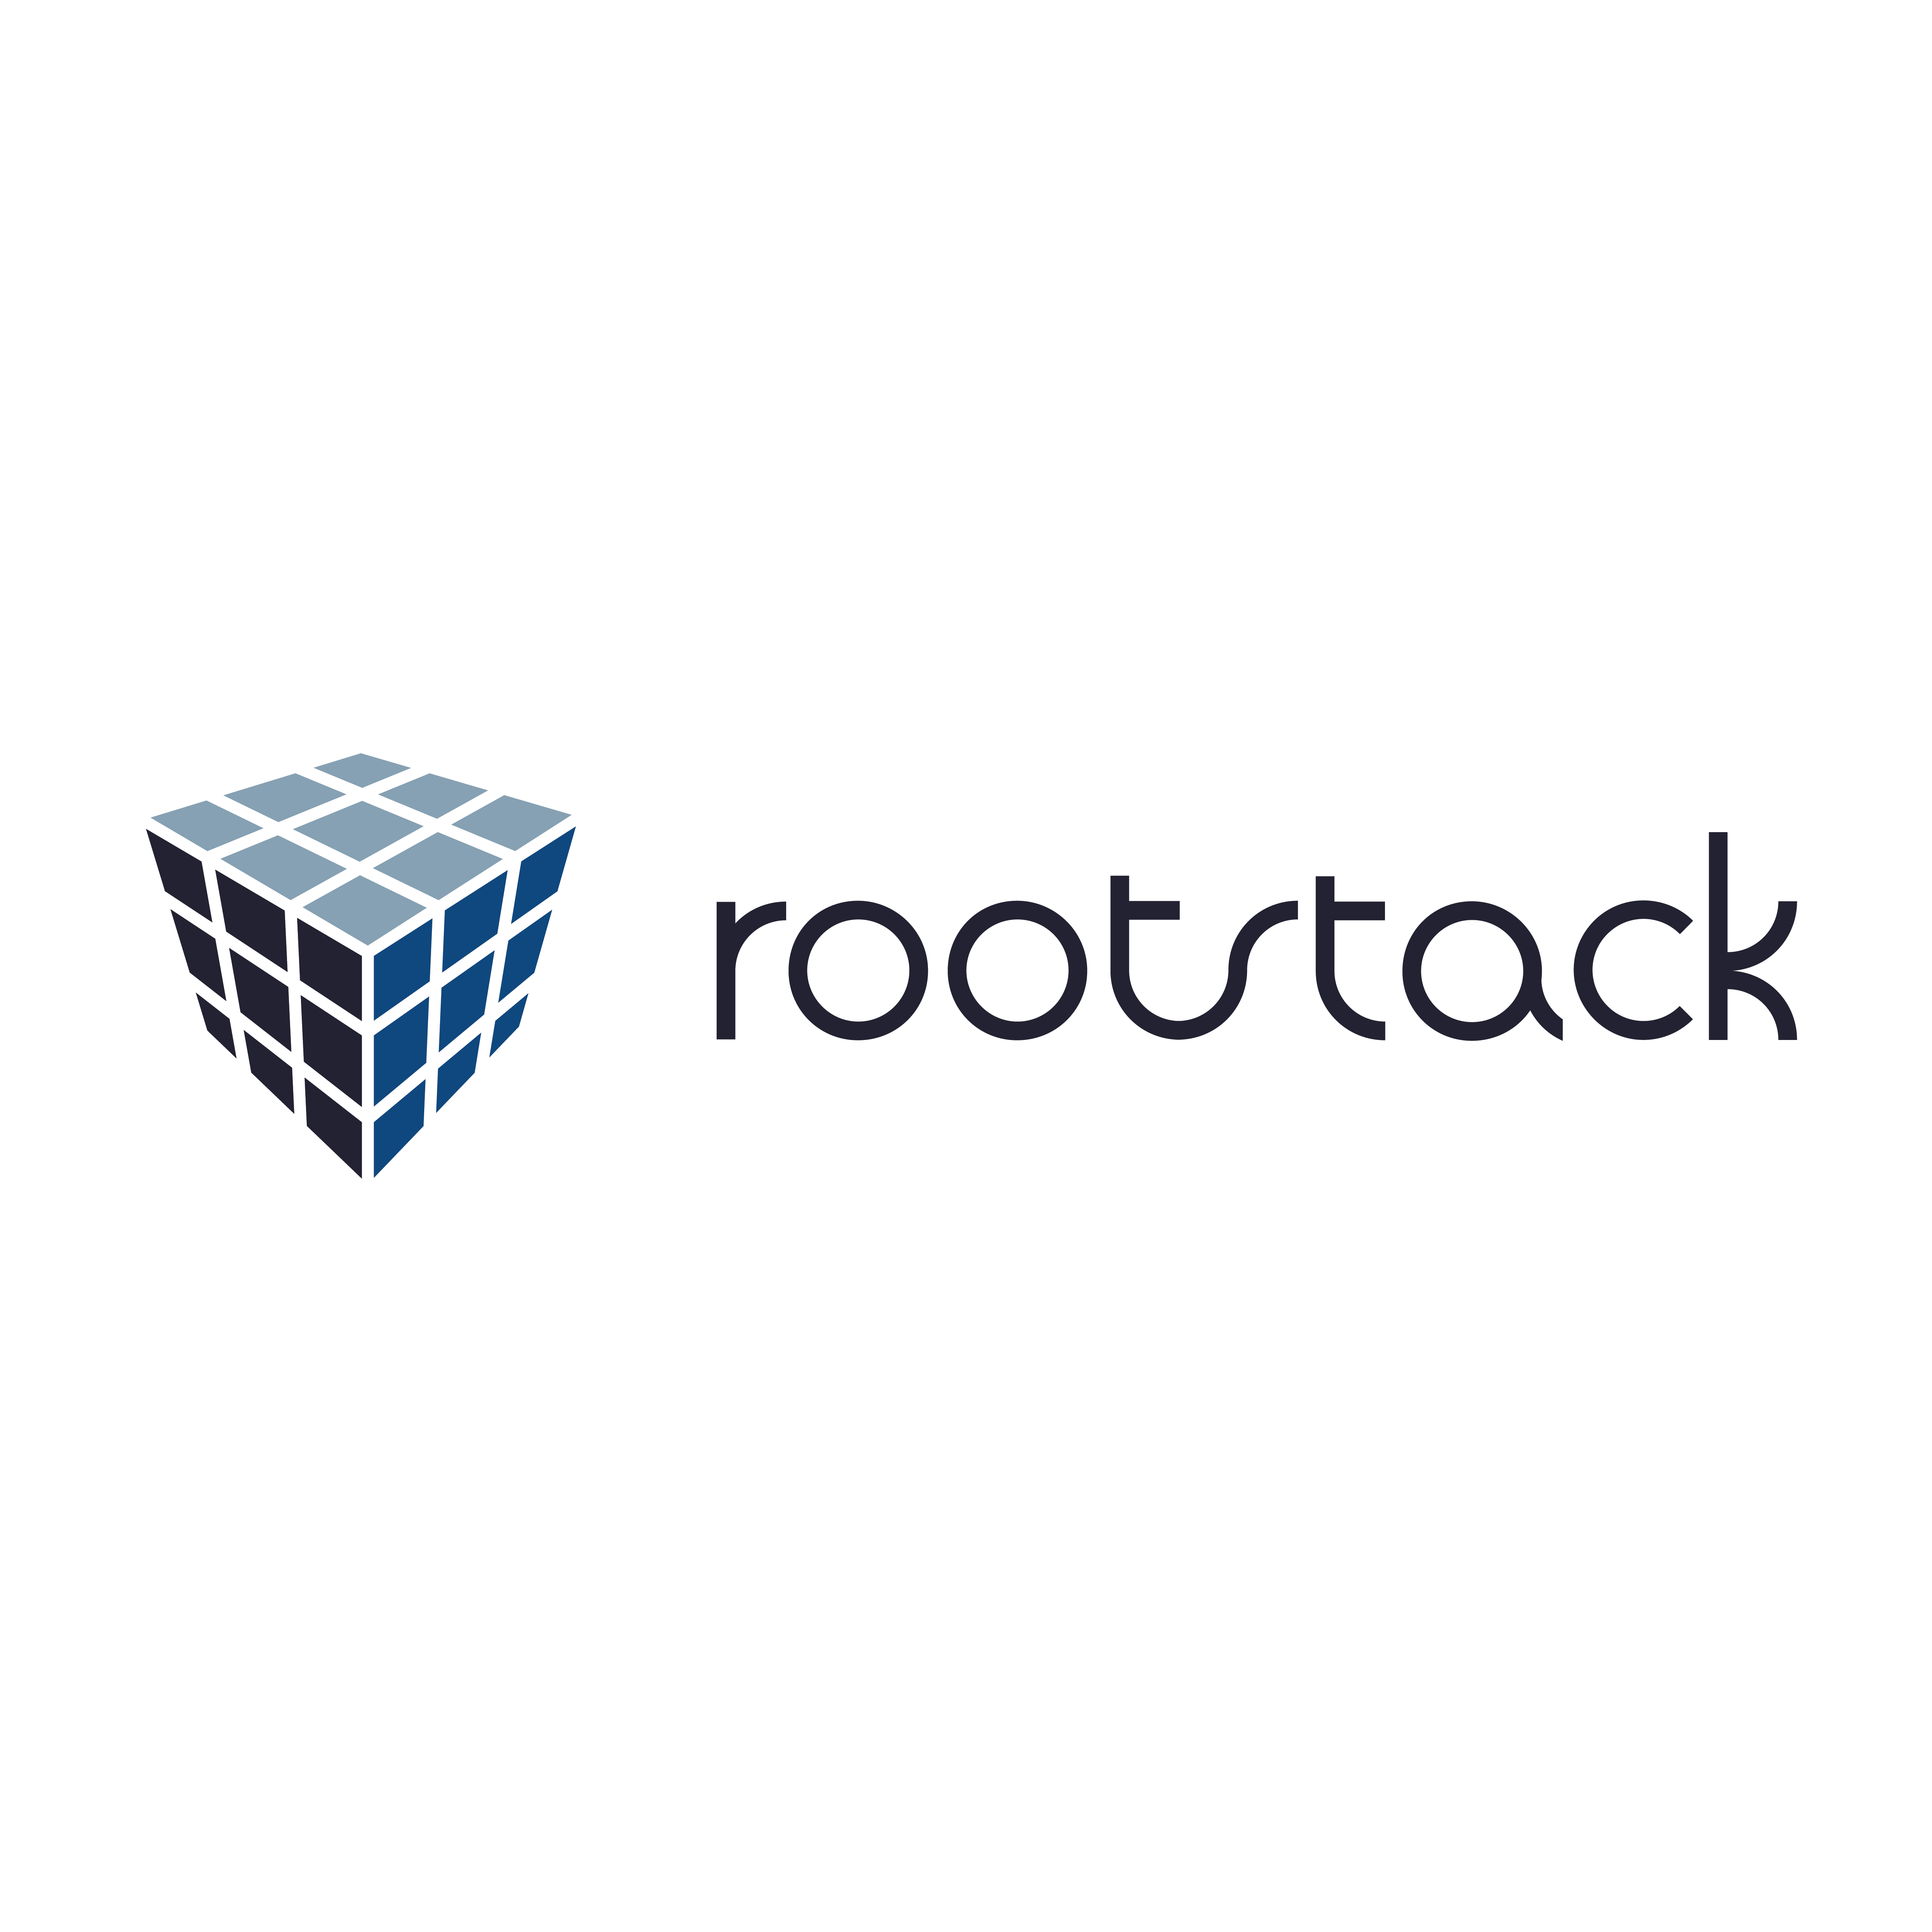 Rootstack